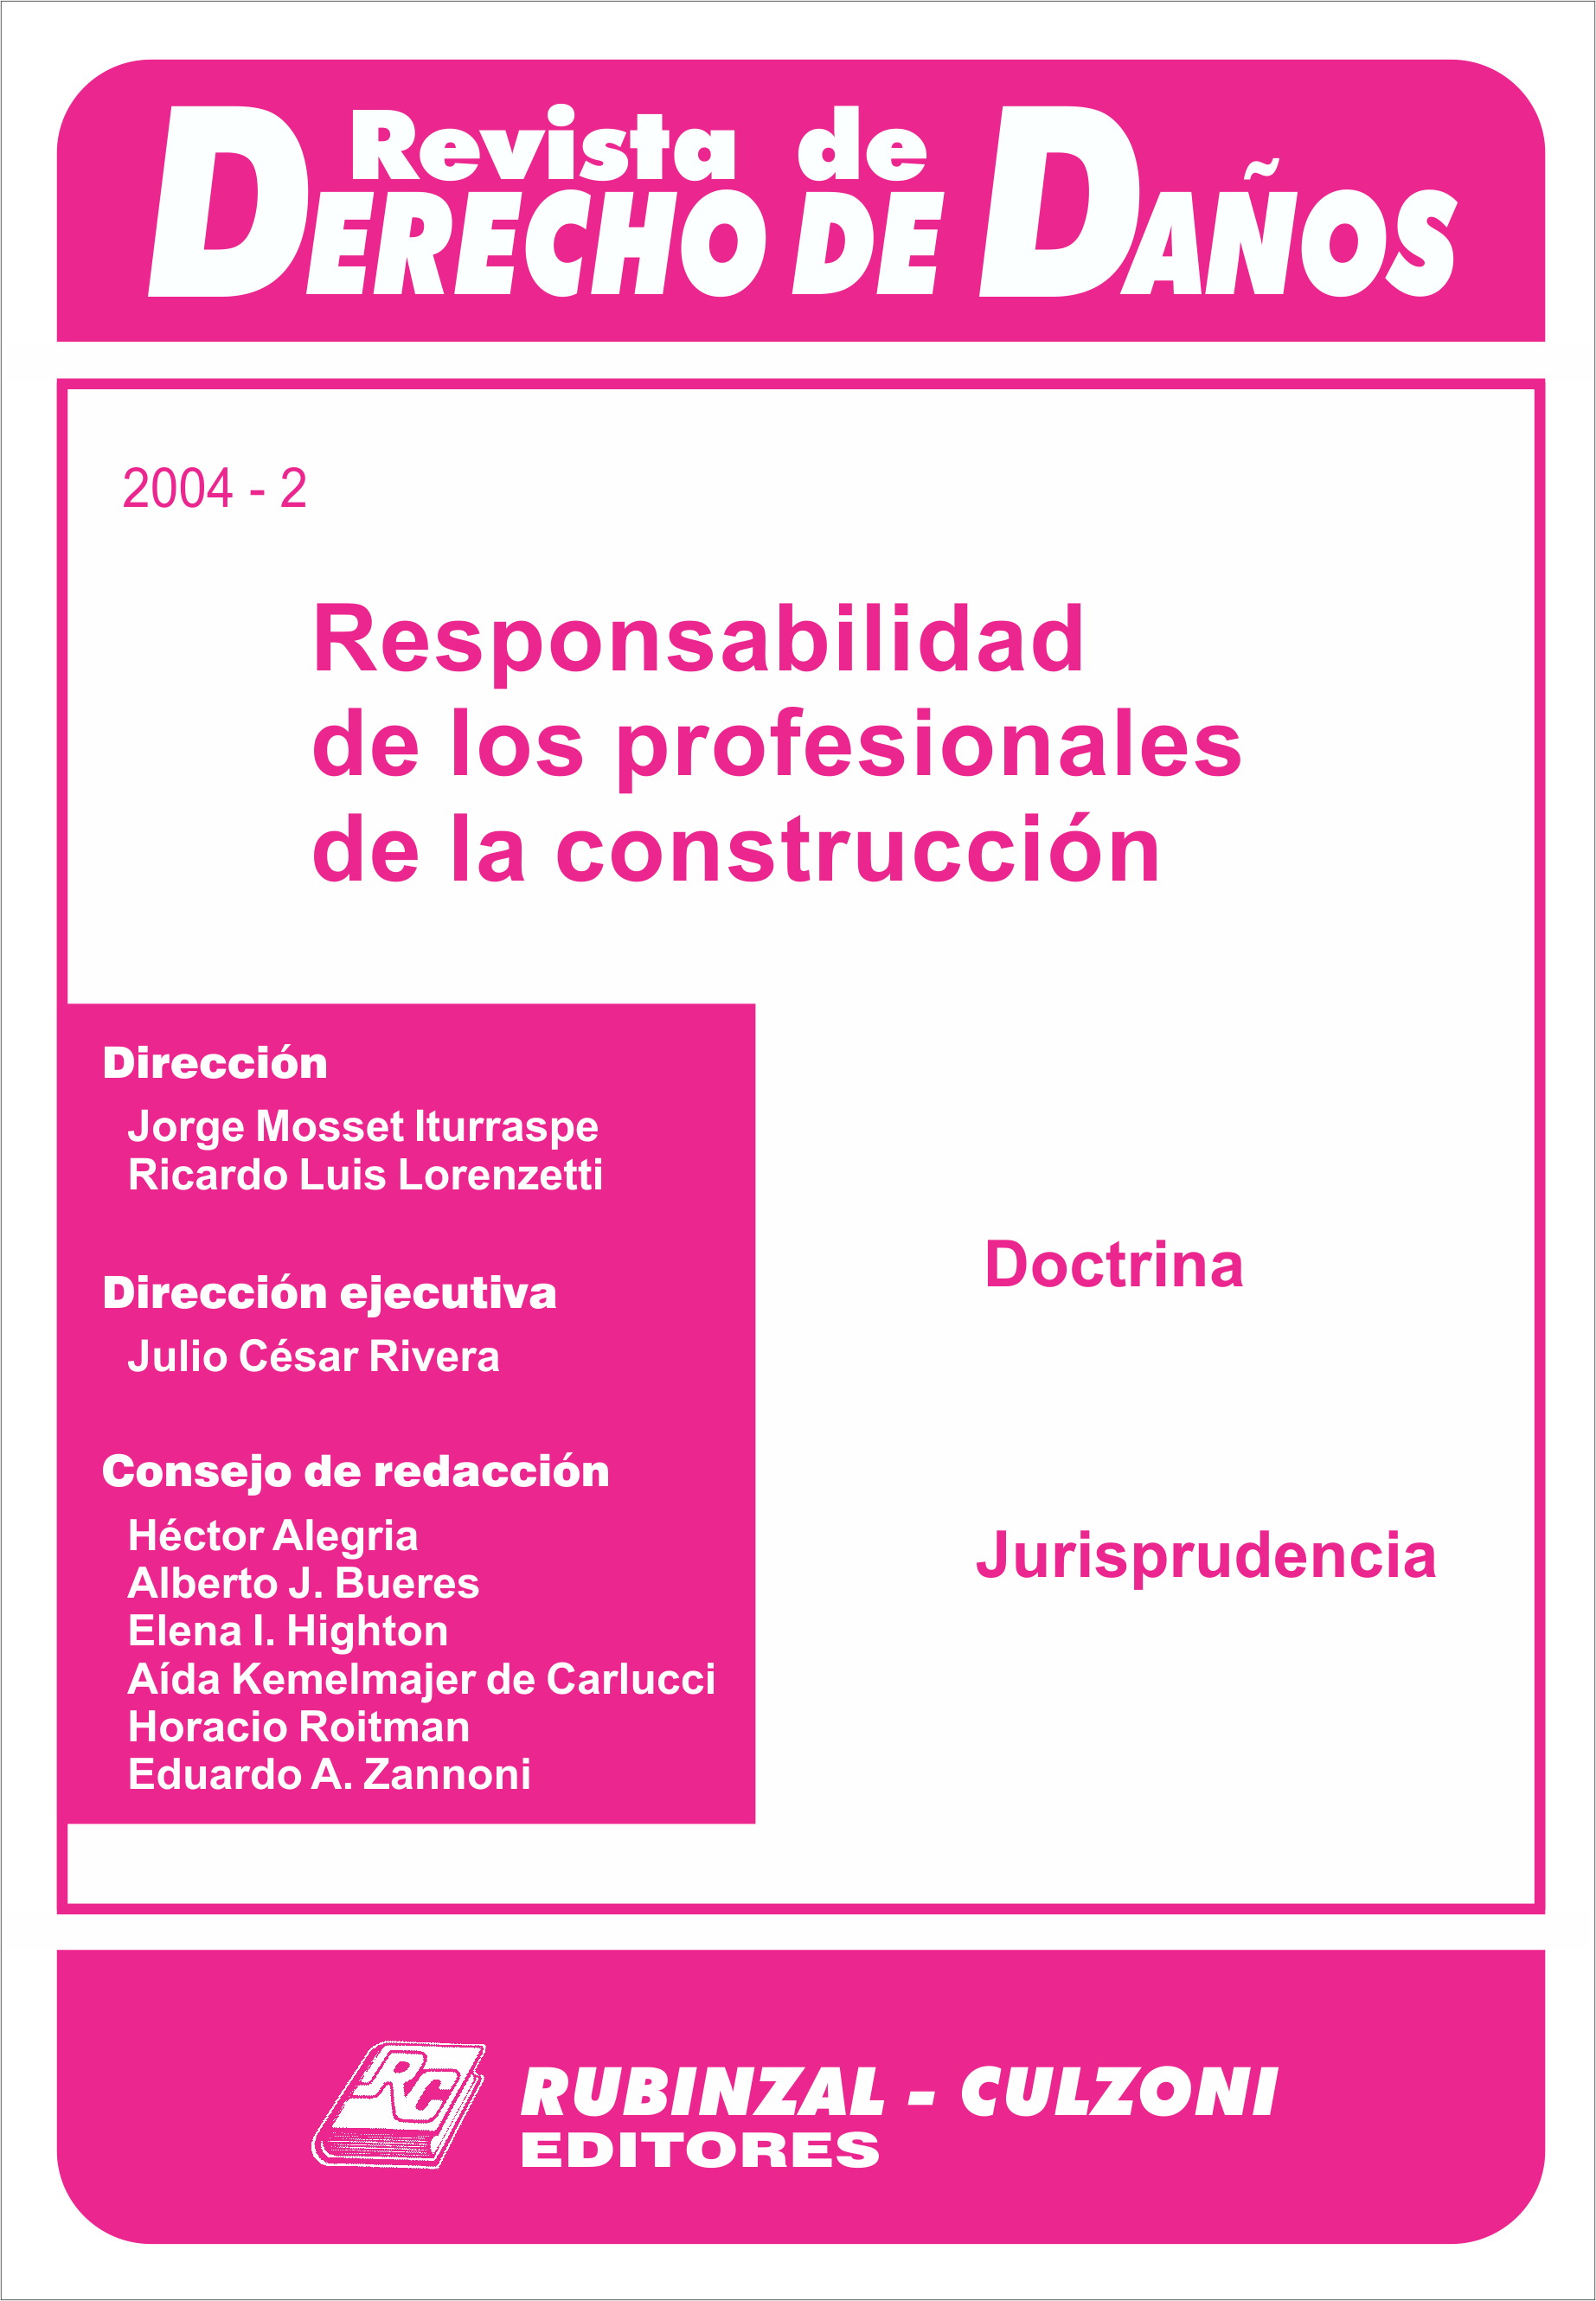 Revista de Derecho de Daños - Responsabilidad de los profesionales de la construcción.